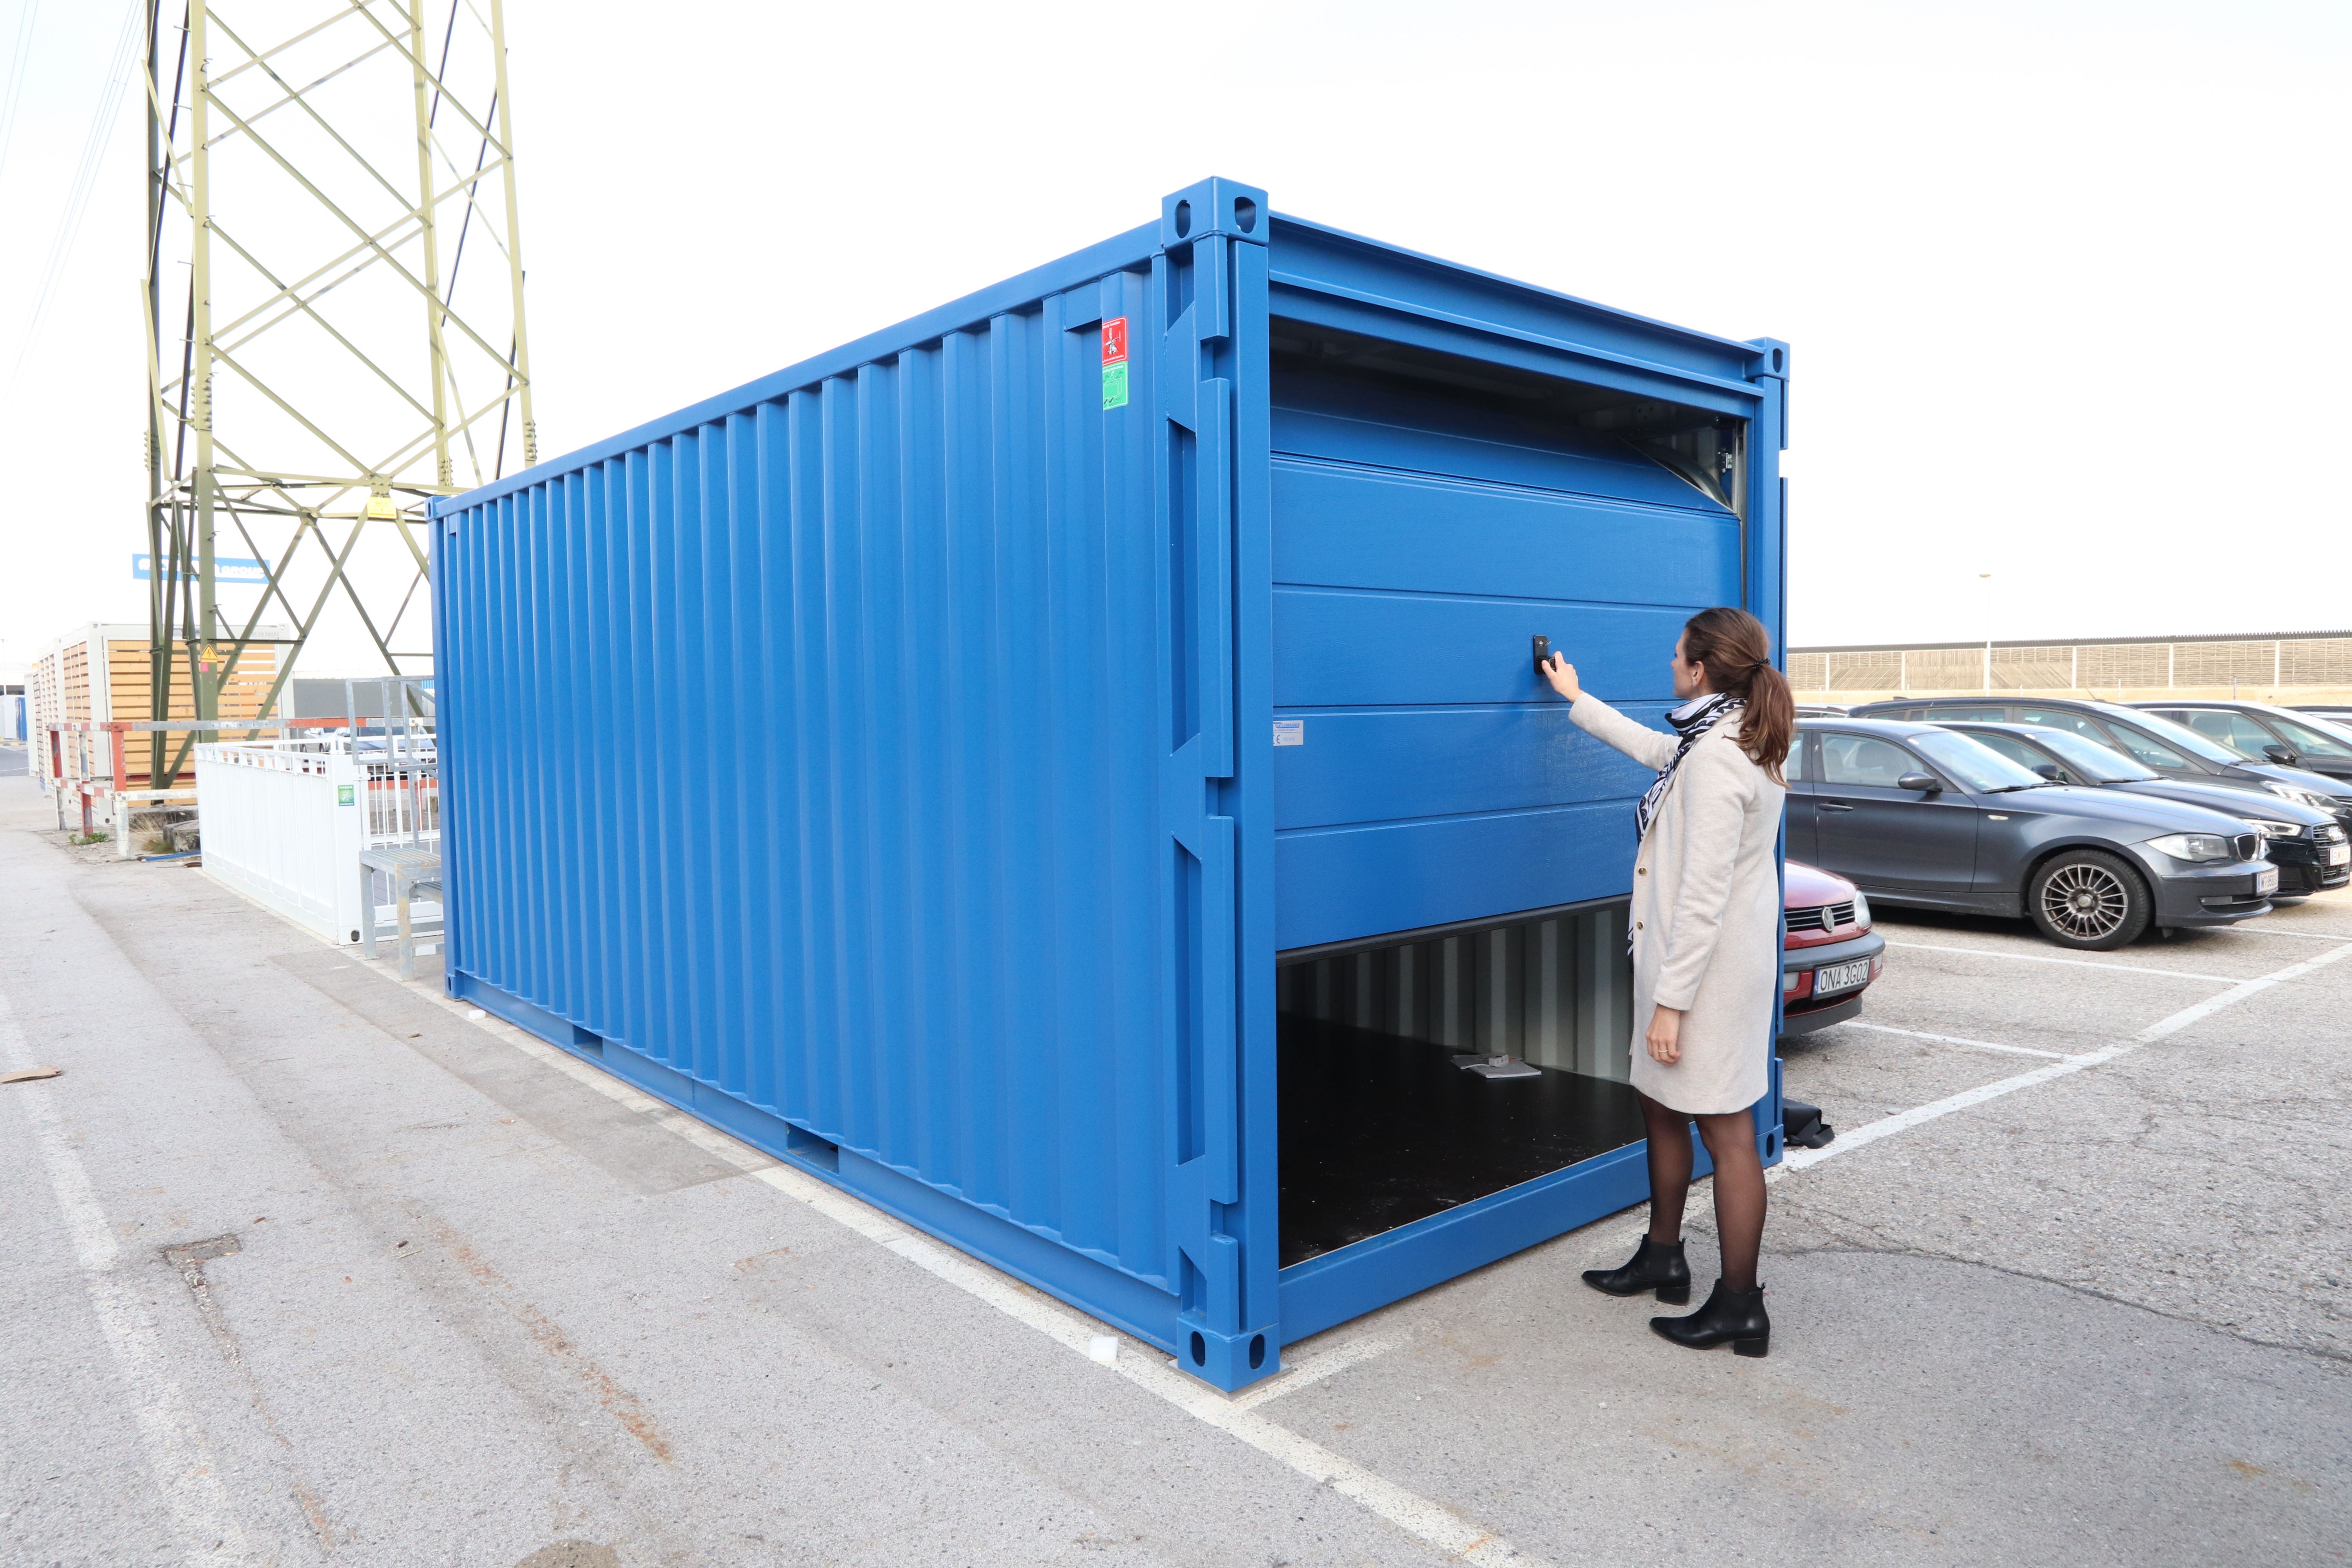 Container de depozitare cu ușă exterioară tip rulou